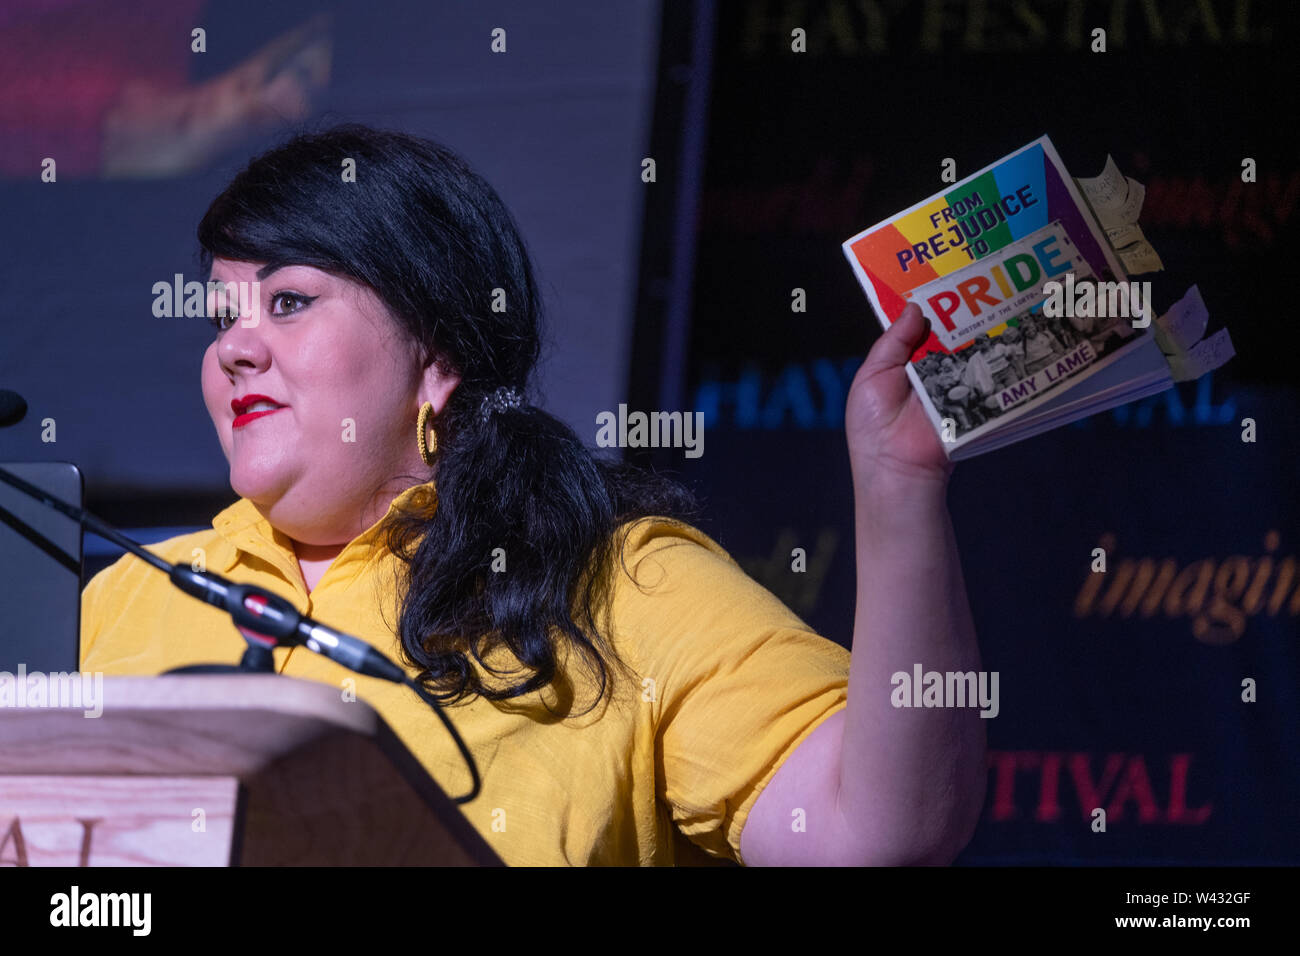 Amy Lamé , artiste américano-britannique, écrivain, animateur de radio et de télévision, connu pour ses one-woman shows, sa performance group Duckie, et sur le thème des médias LGBT. Apparaissant à l'Hay Festival 2019 Banque D'Images